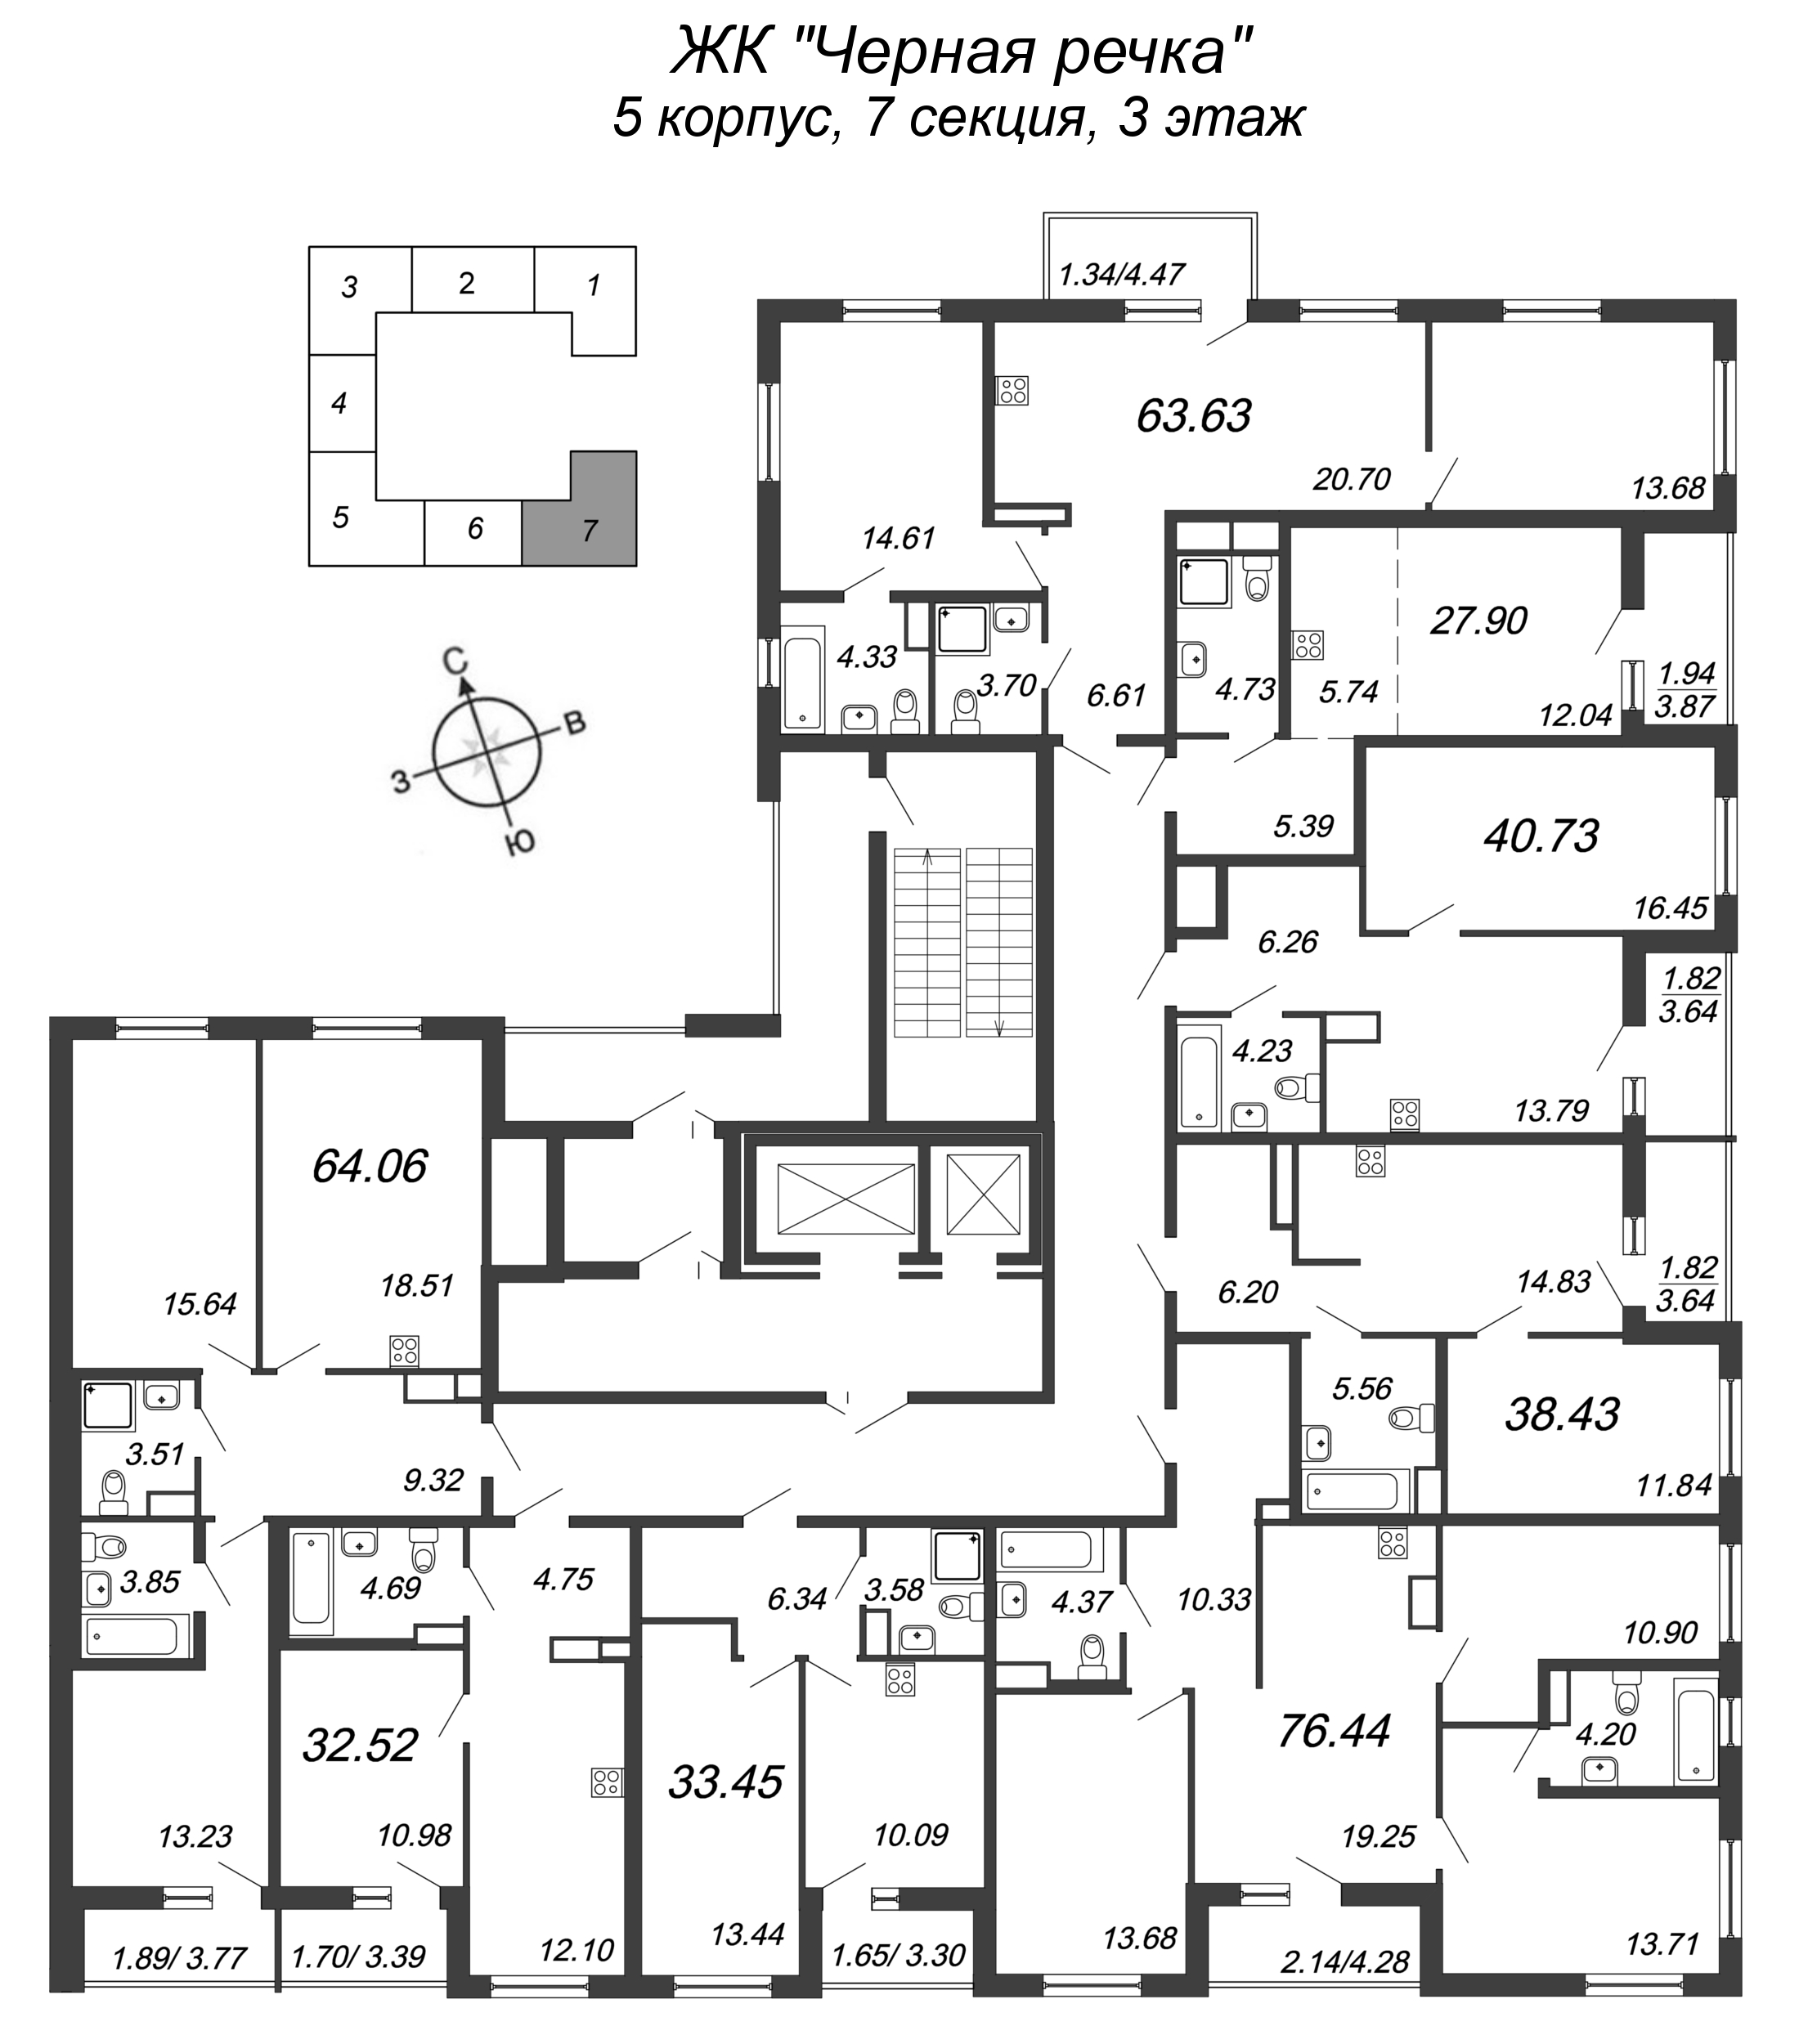 Квартира-студия, 27.9 м² в ЖК "Чёрная речка" - планировка этажа